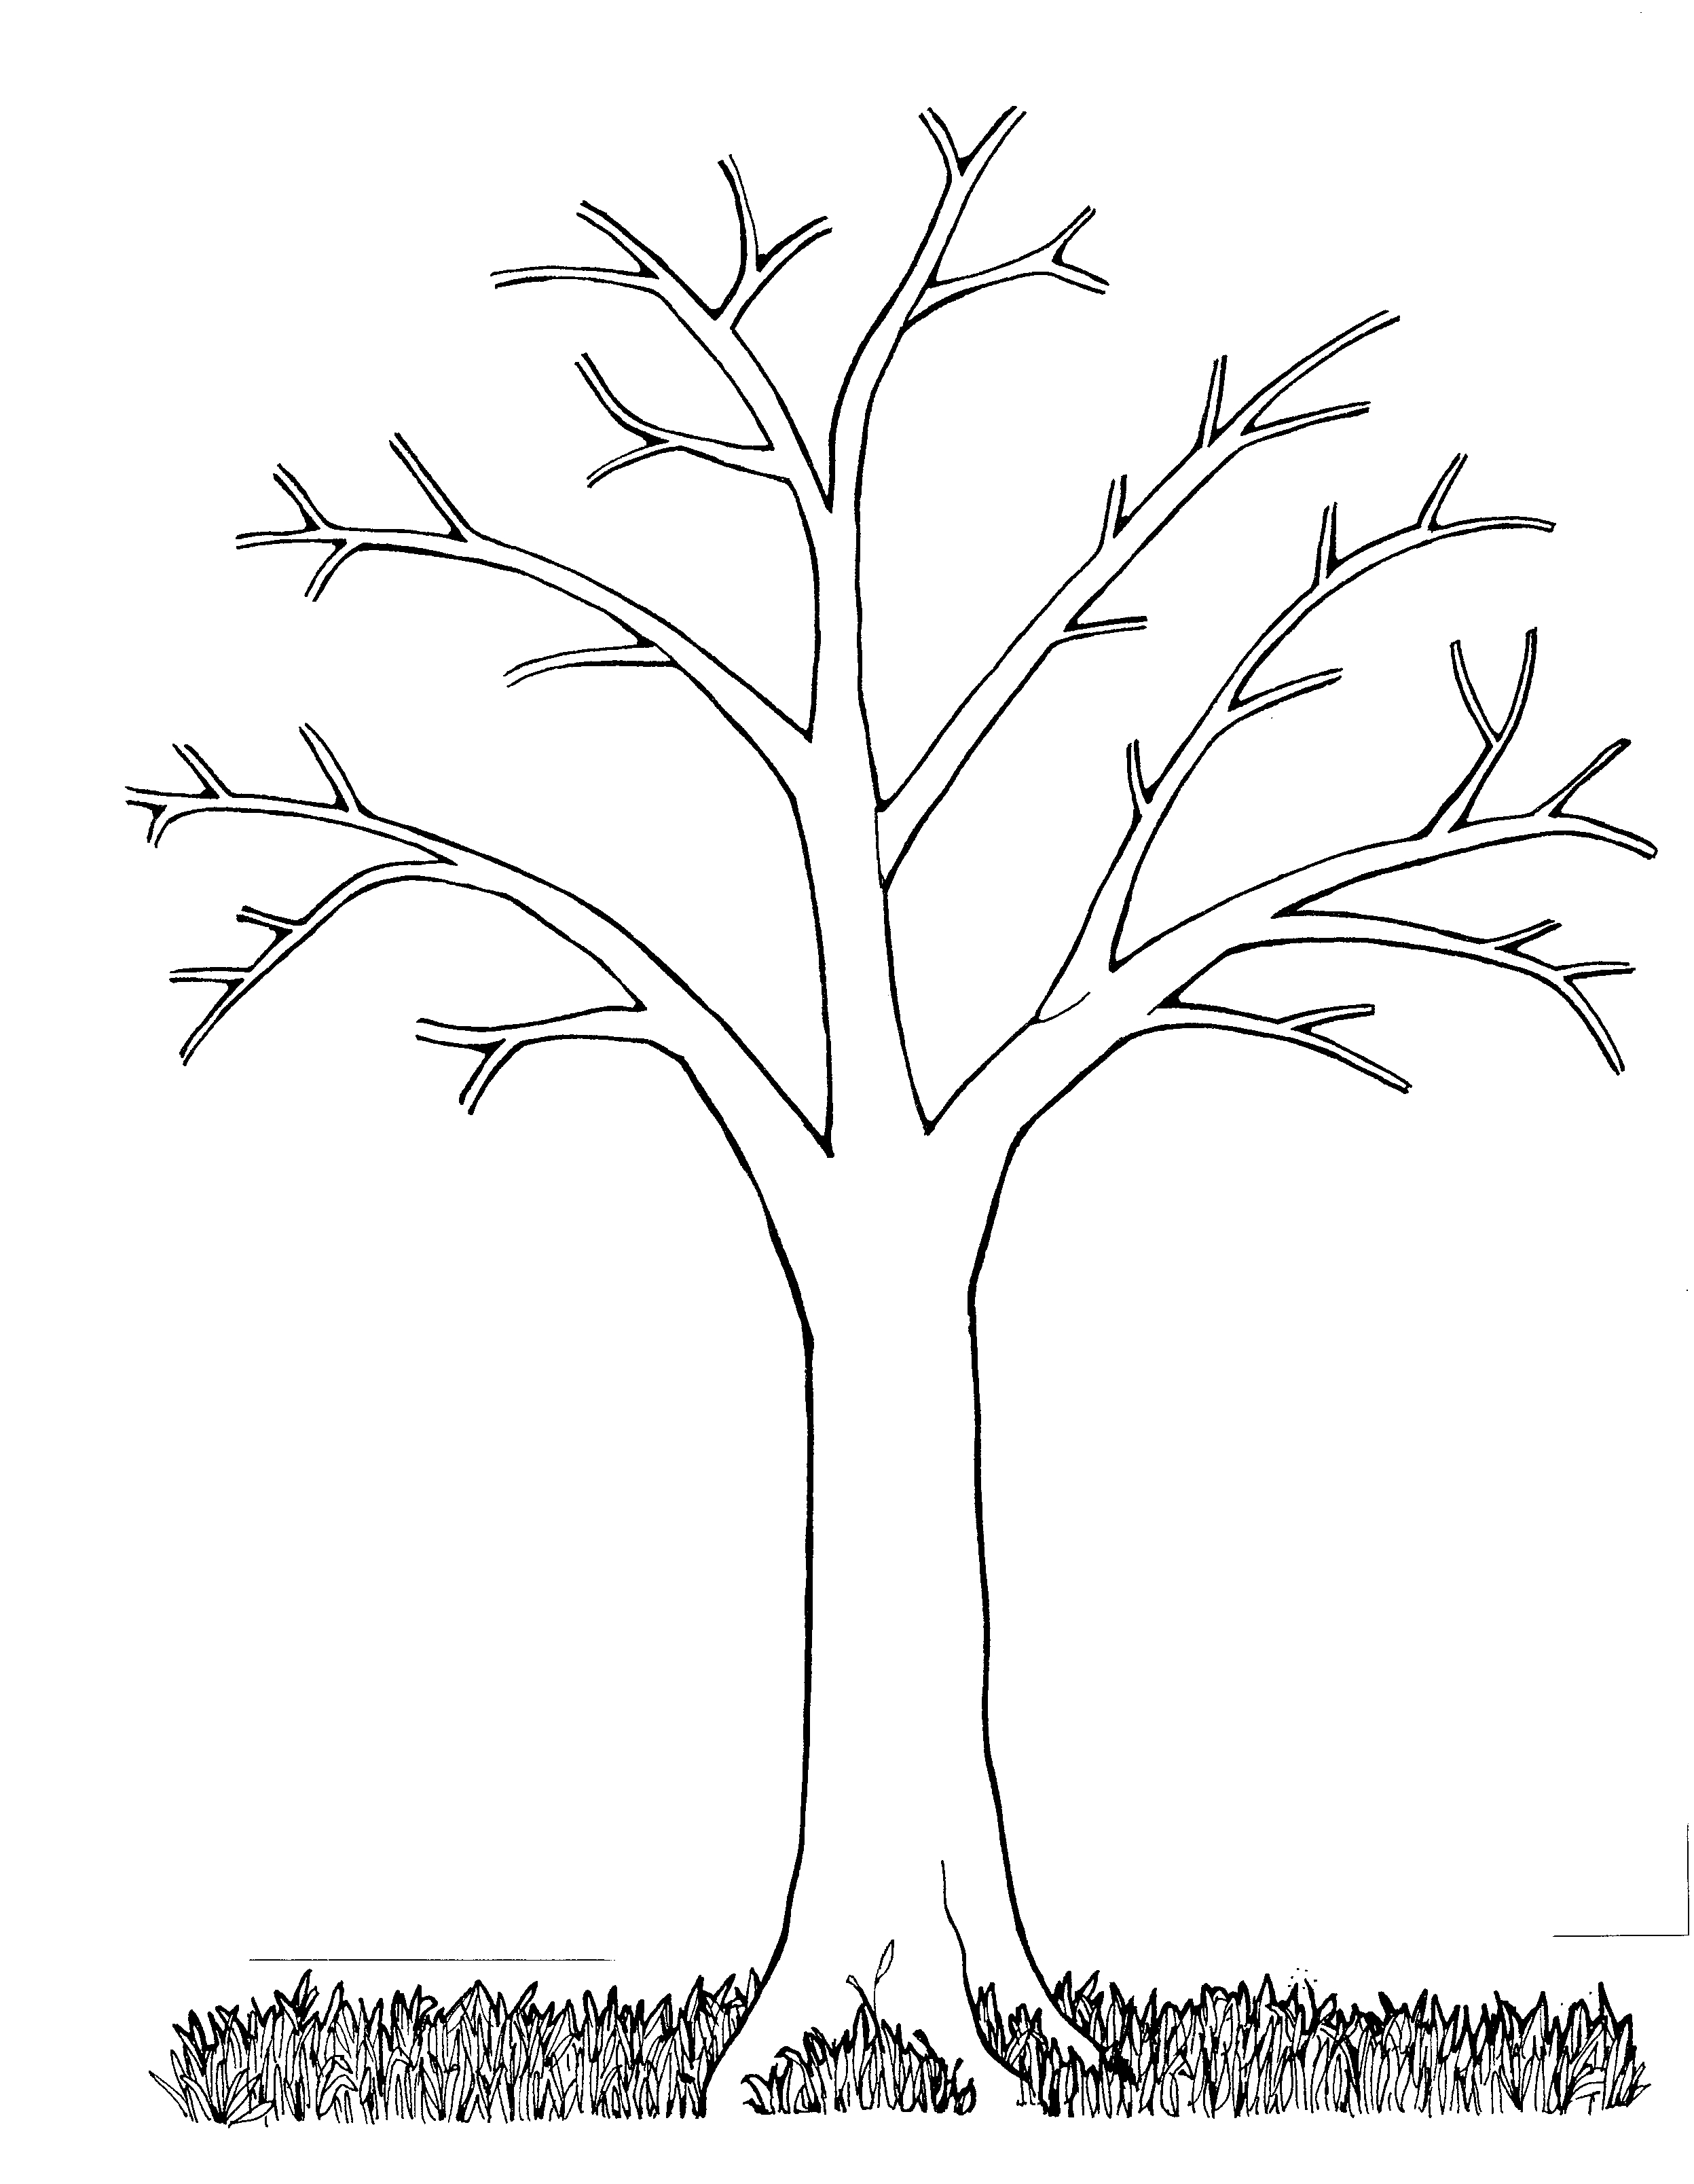 Шаблон осеннего дерева для аппликации: Аппликация из сухих листьев «Осеннее дерево» своими руками для детей. Мастер-класс с пошаговым фото.